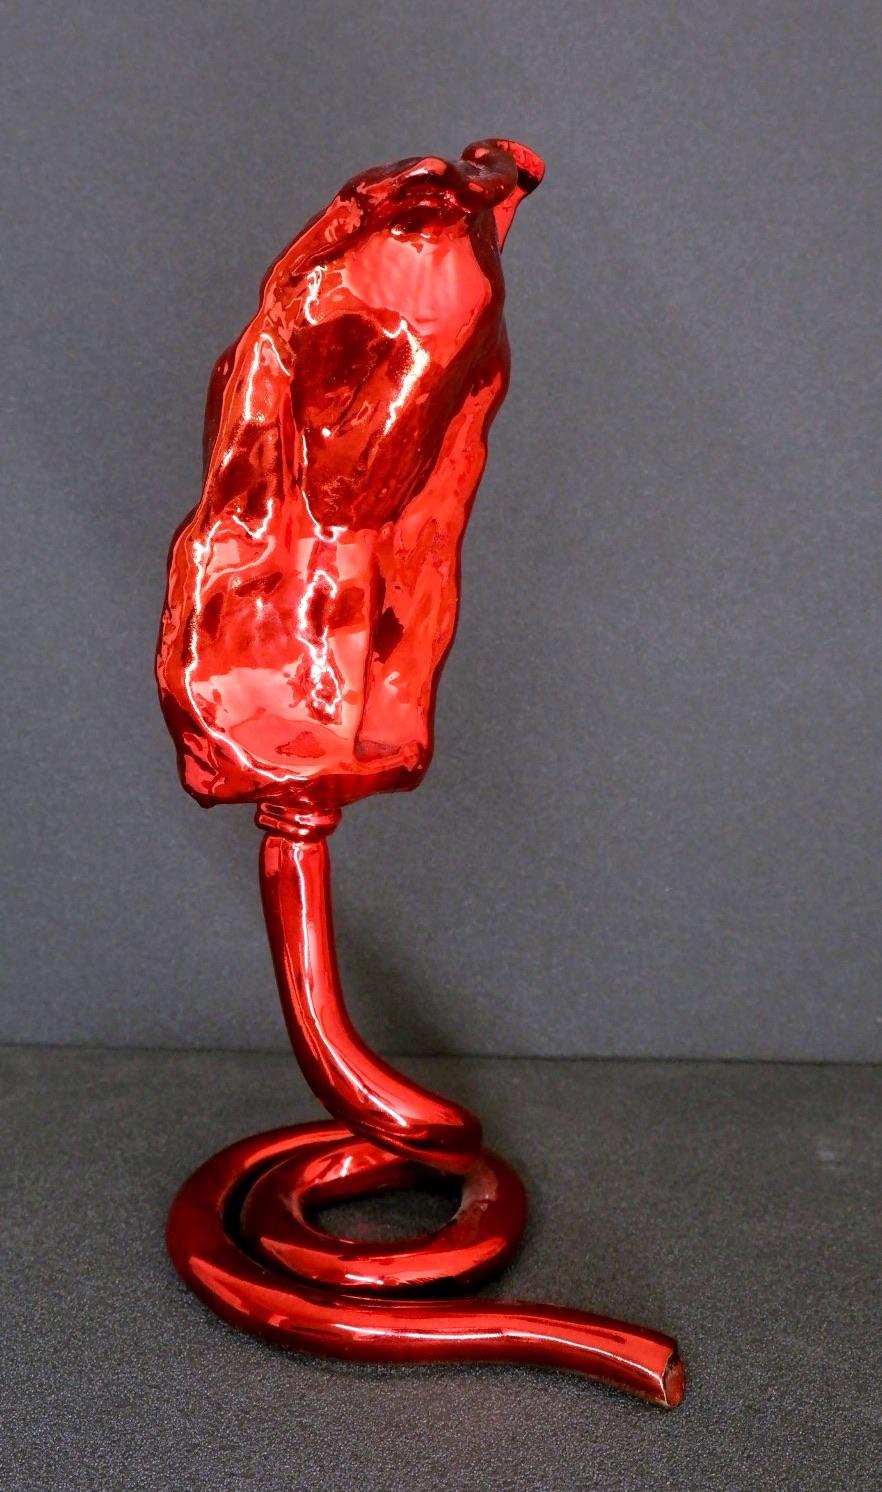 Yizhaq Mevorah hat diese atemberaubende, rot polierte Bronzeskulptur geschaffen, die die Essenz der Kreativität selbst verkörpert - eine Tube Farbe. Dieses Werk, eine harmonische Mischung aus Mevorahs bevorzugten Disziplinen der Bildhauerei und der